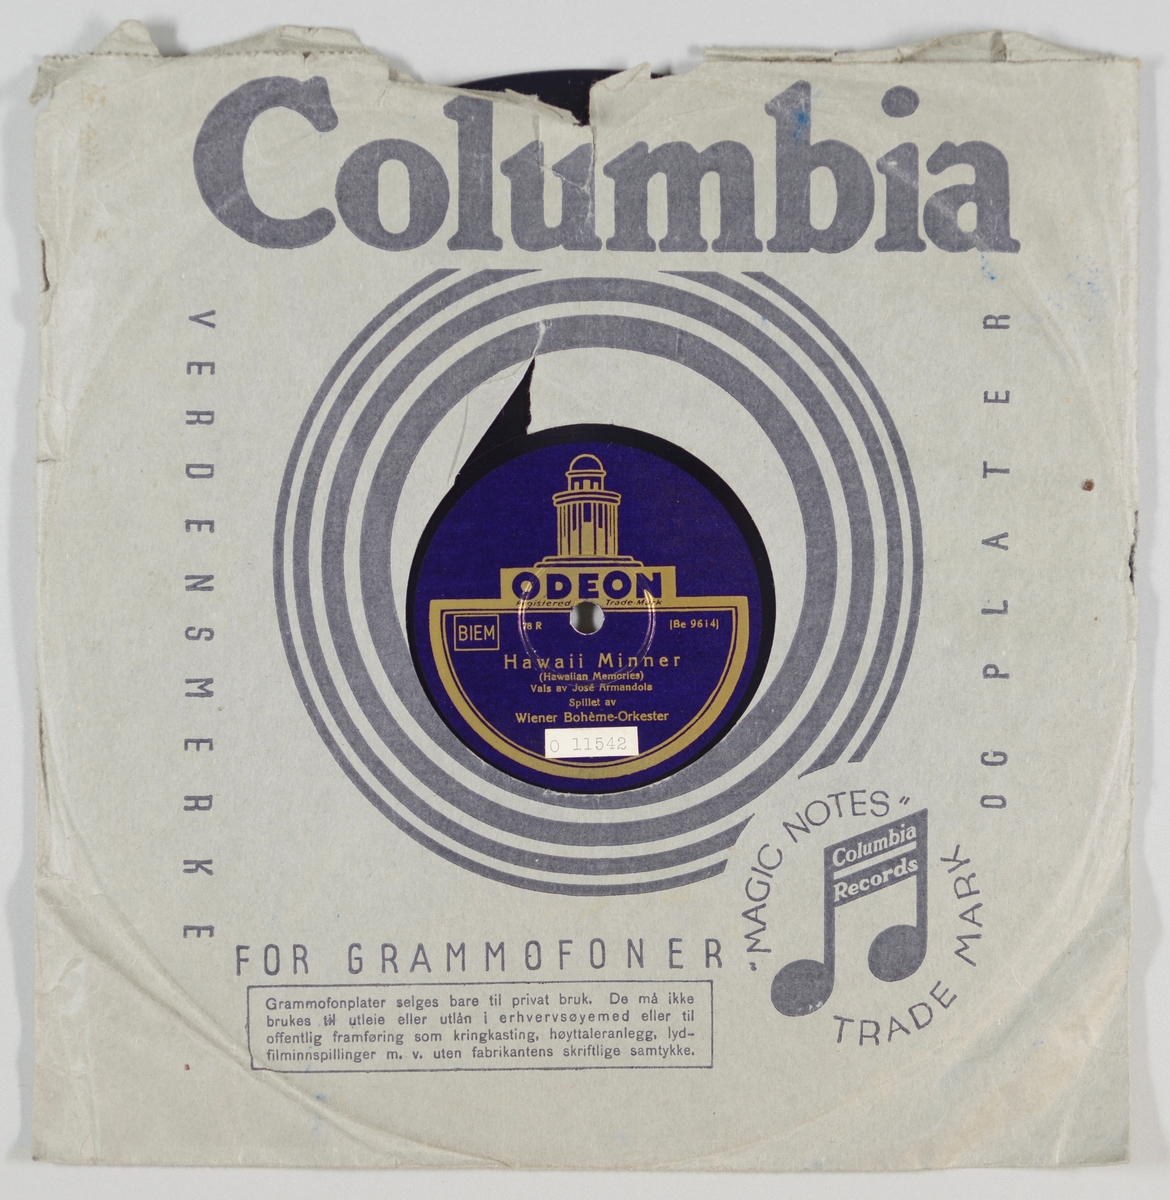 54284.01:
Svart grammofonplate laget av bakelitt og skjellak. Etiketten er mørk lilla med skrift i gull, for tekst se "Påført tekst/merker". På etiketten er det tegning av kuppelen på Odeon.

54284.02:
Plateomslaget til platen er laget av gråblått papir som er limt. Skrift/design er i svart. Det er opprinnelig et plaateomslag for en Columbia-plate, så det står Columbia mm samt selskapets rettigheter på omslaget, for tekst se "Påført tekst/merker". Rundt hullet for etiketten er det striper. Omslaget er nokså ødelagt.